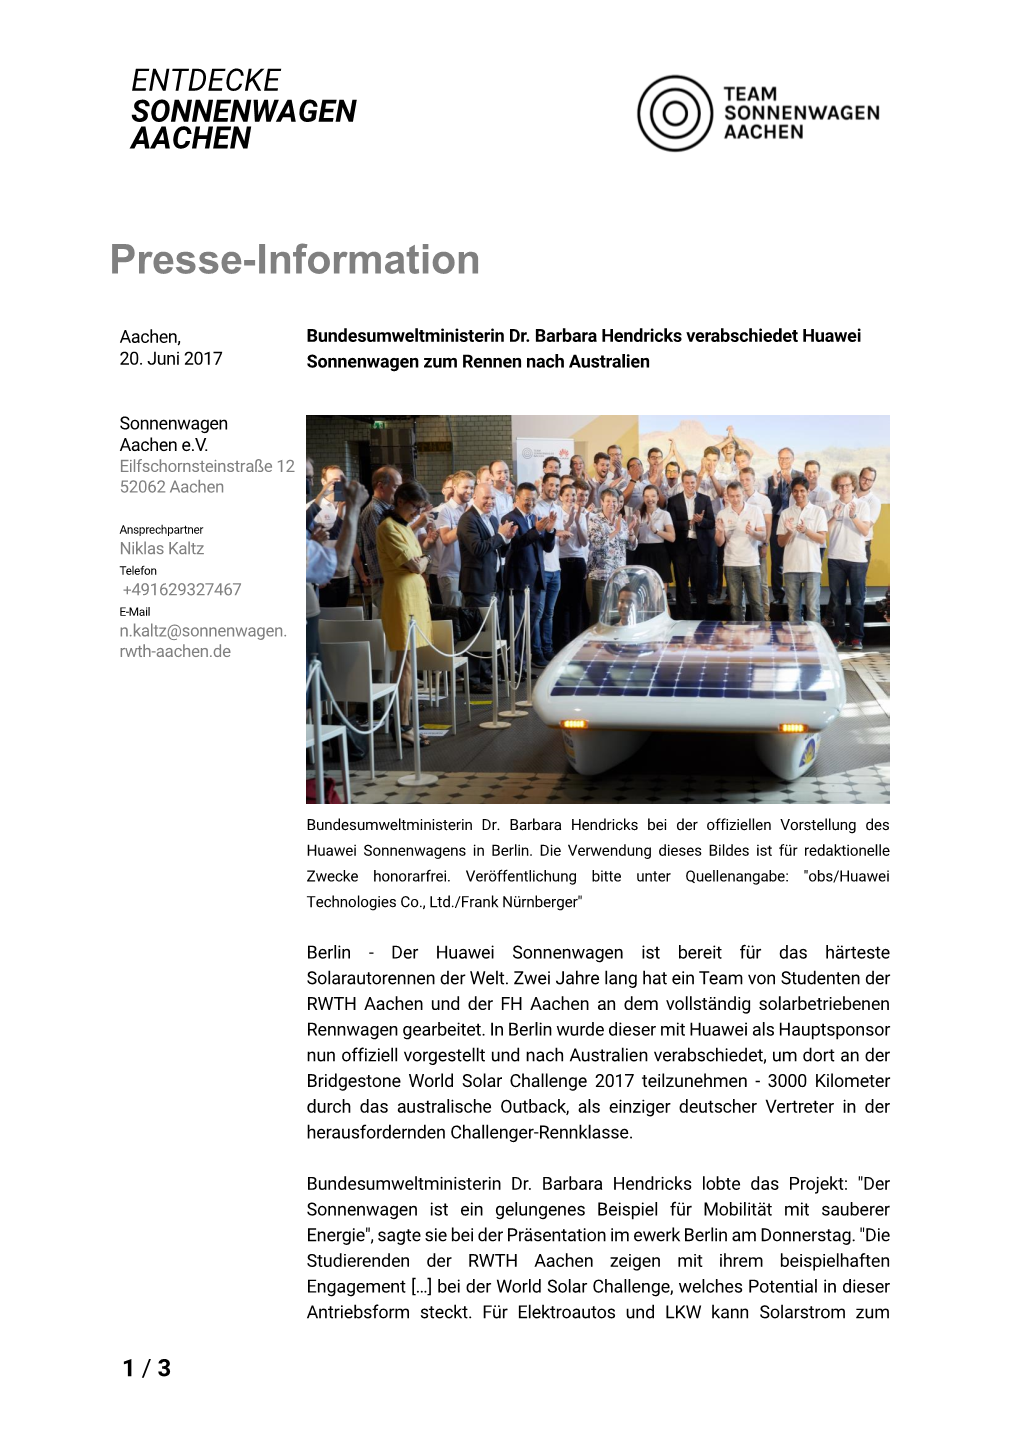 Presse-Information Steht Auf Der Website Von Sonnenwagen Aachen Unter Zum Download Bereit